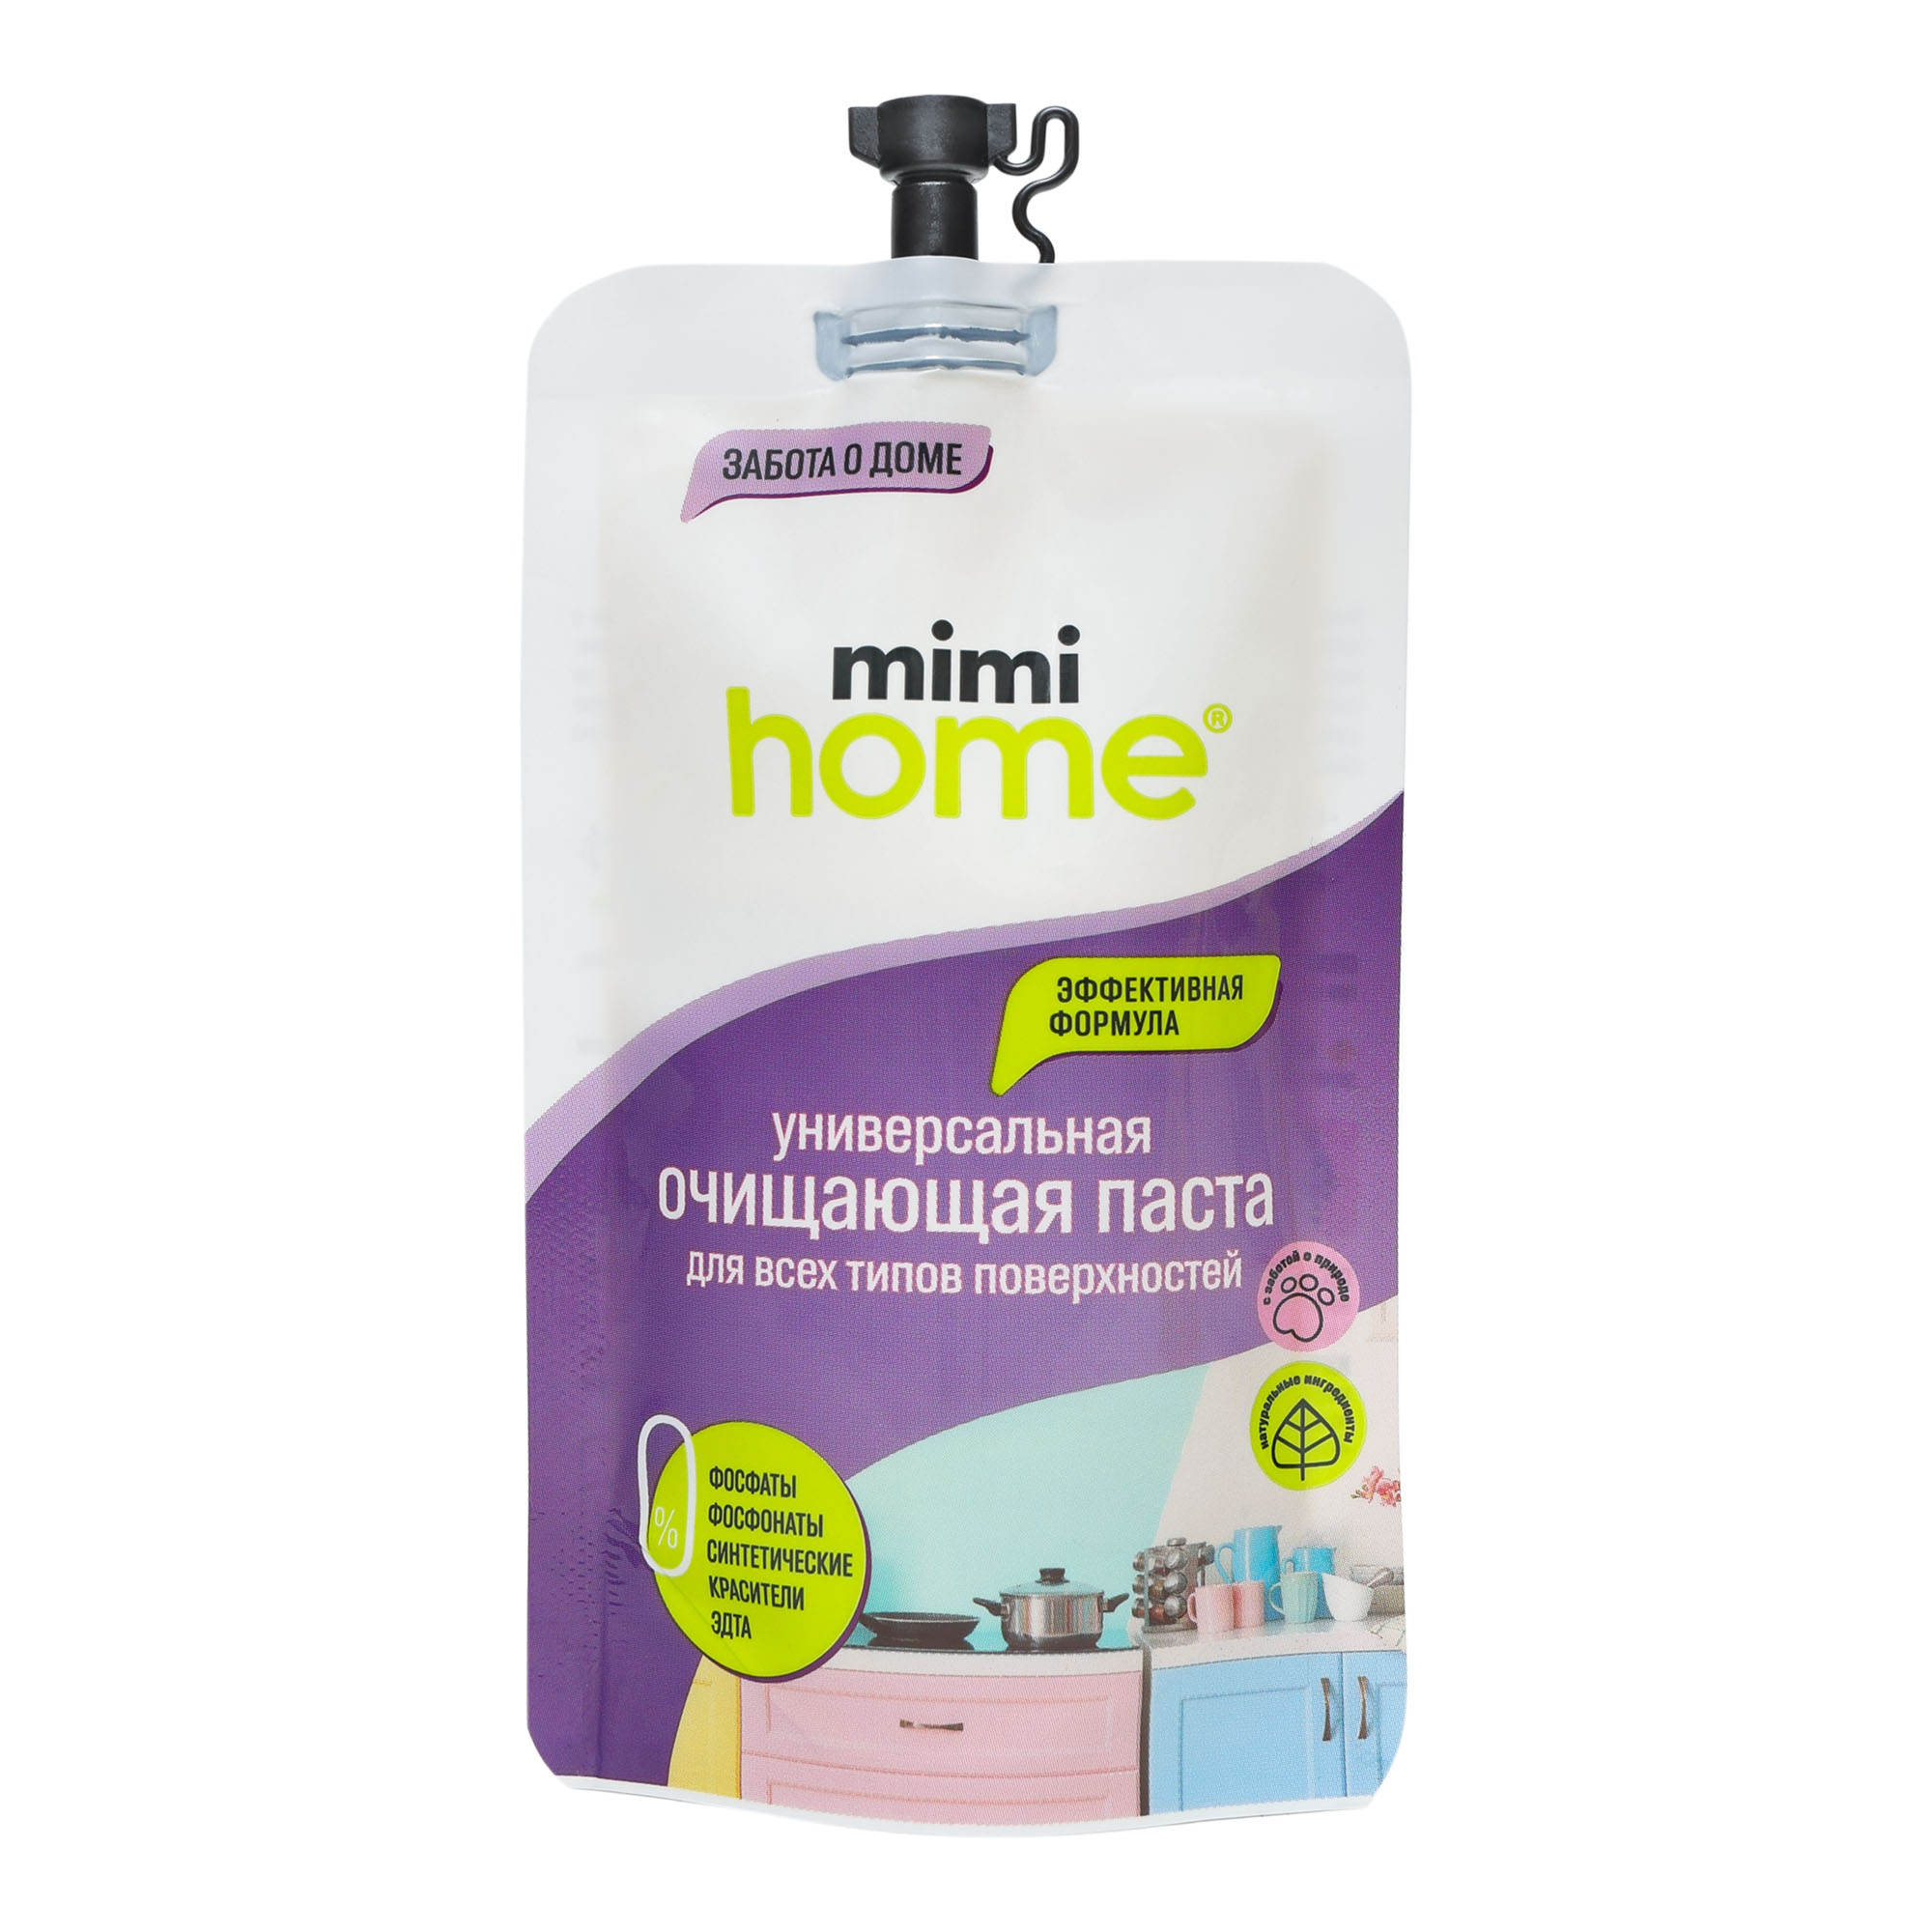 Чистящее средство Mimi Home для всех видов поверхностей 100 мл чистящее средство molecola миндаль универсальное для любых поверхностей 1 л